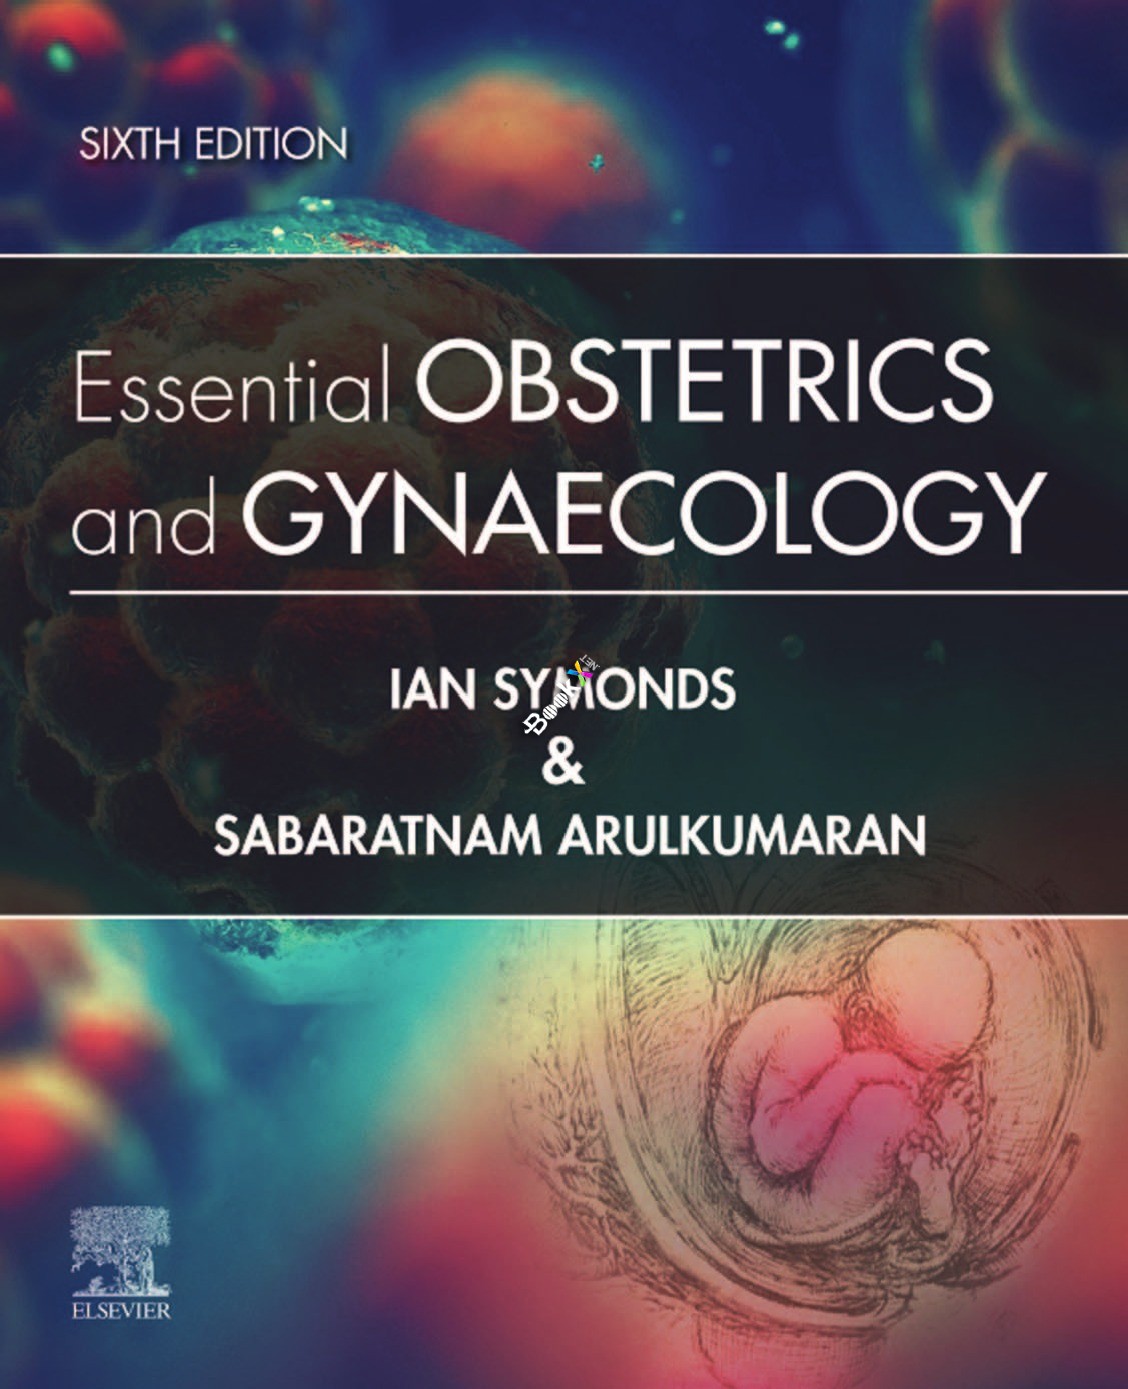 (eBook PDF)Essential Obstetrics and Gynaecology, Sixth Edition by Ian M. Symonds MB BS MMedSci DM FRCOG FRANZCOG , Sabaratnam Arulkumaran PhD DSc FRCSE FRCOG FRANZCOG (Hon) 